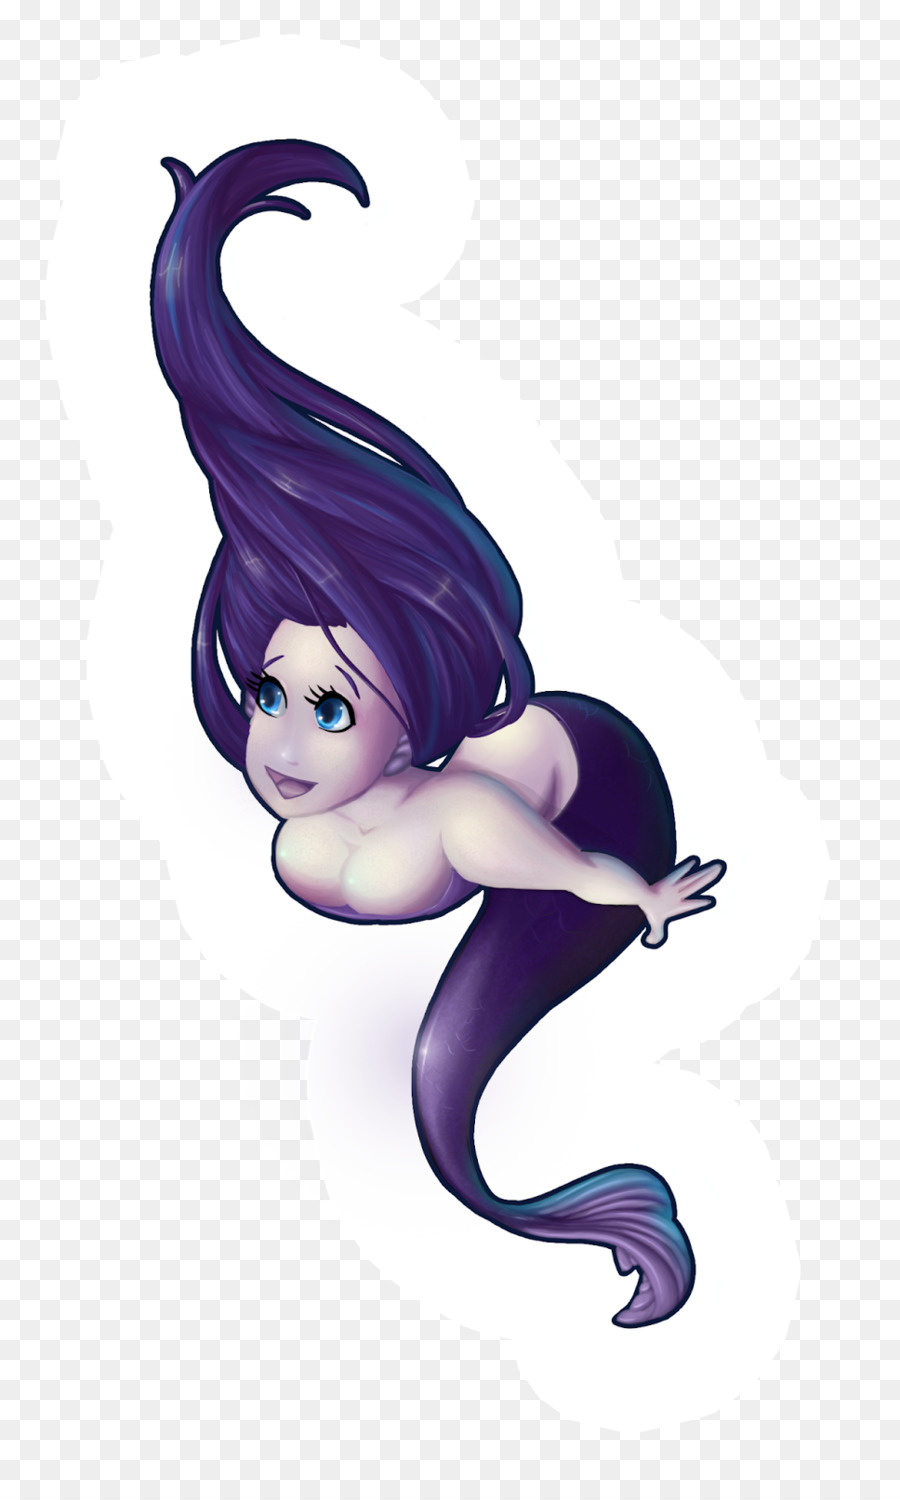 Sirena Disegno Fata Ninfa - sirena